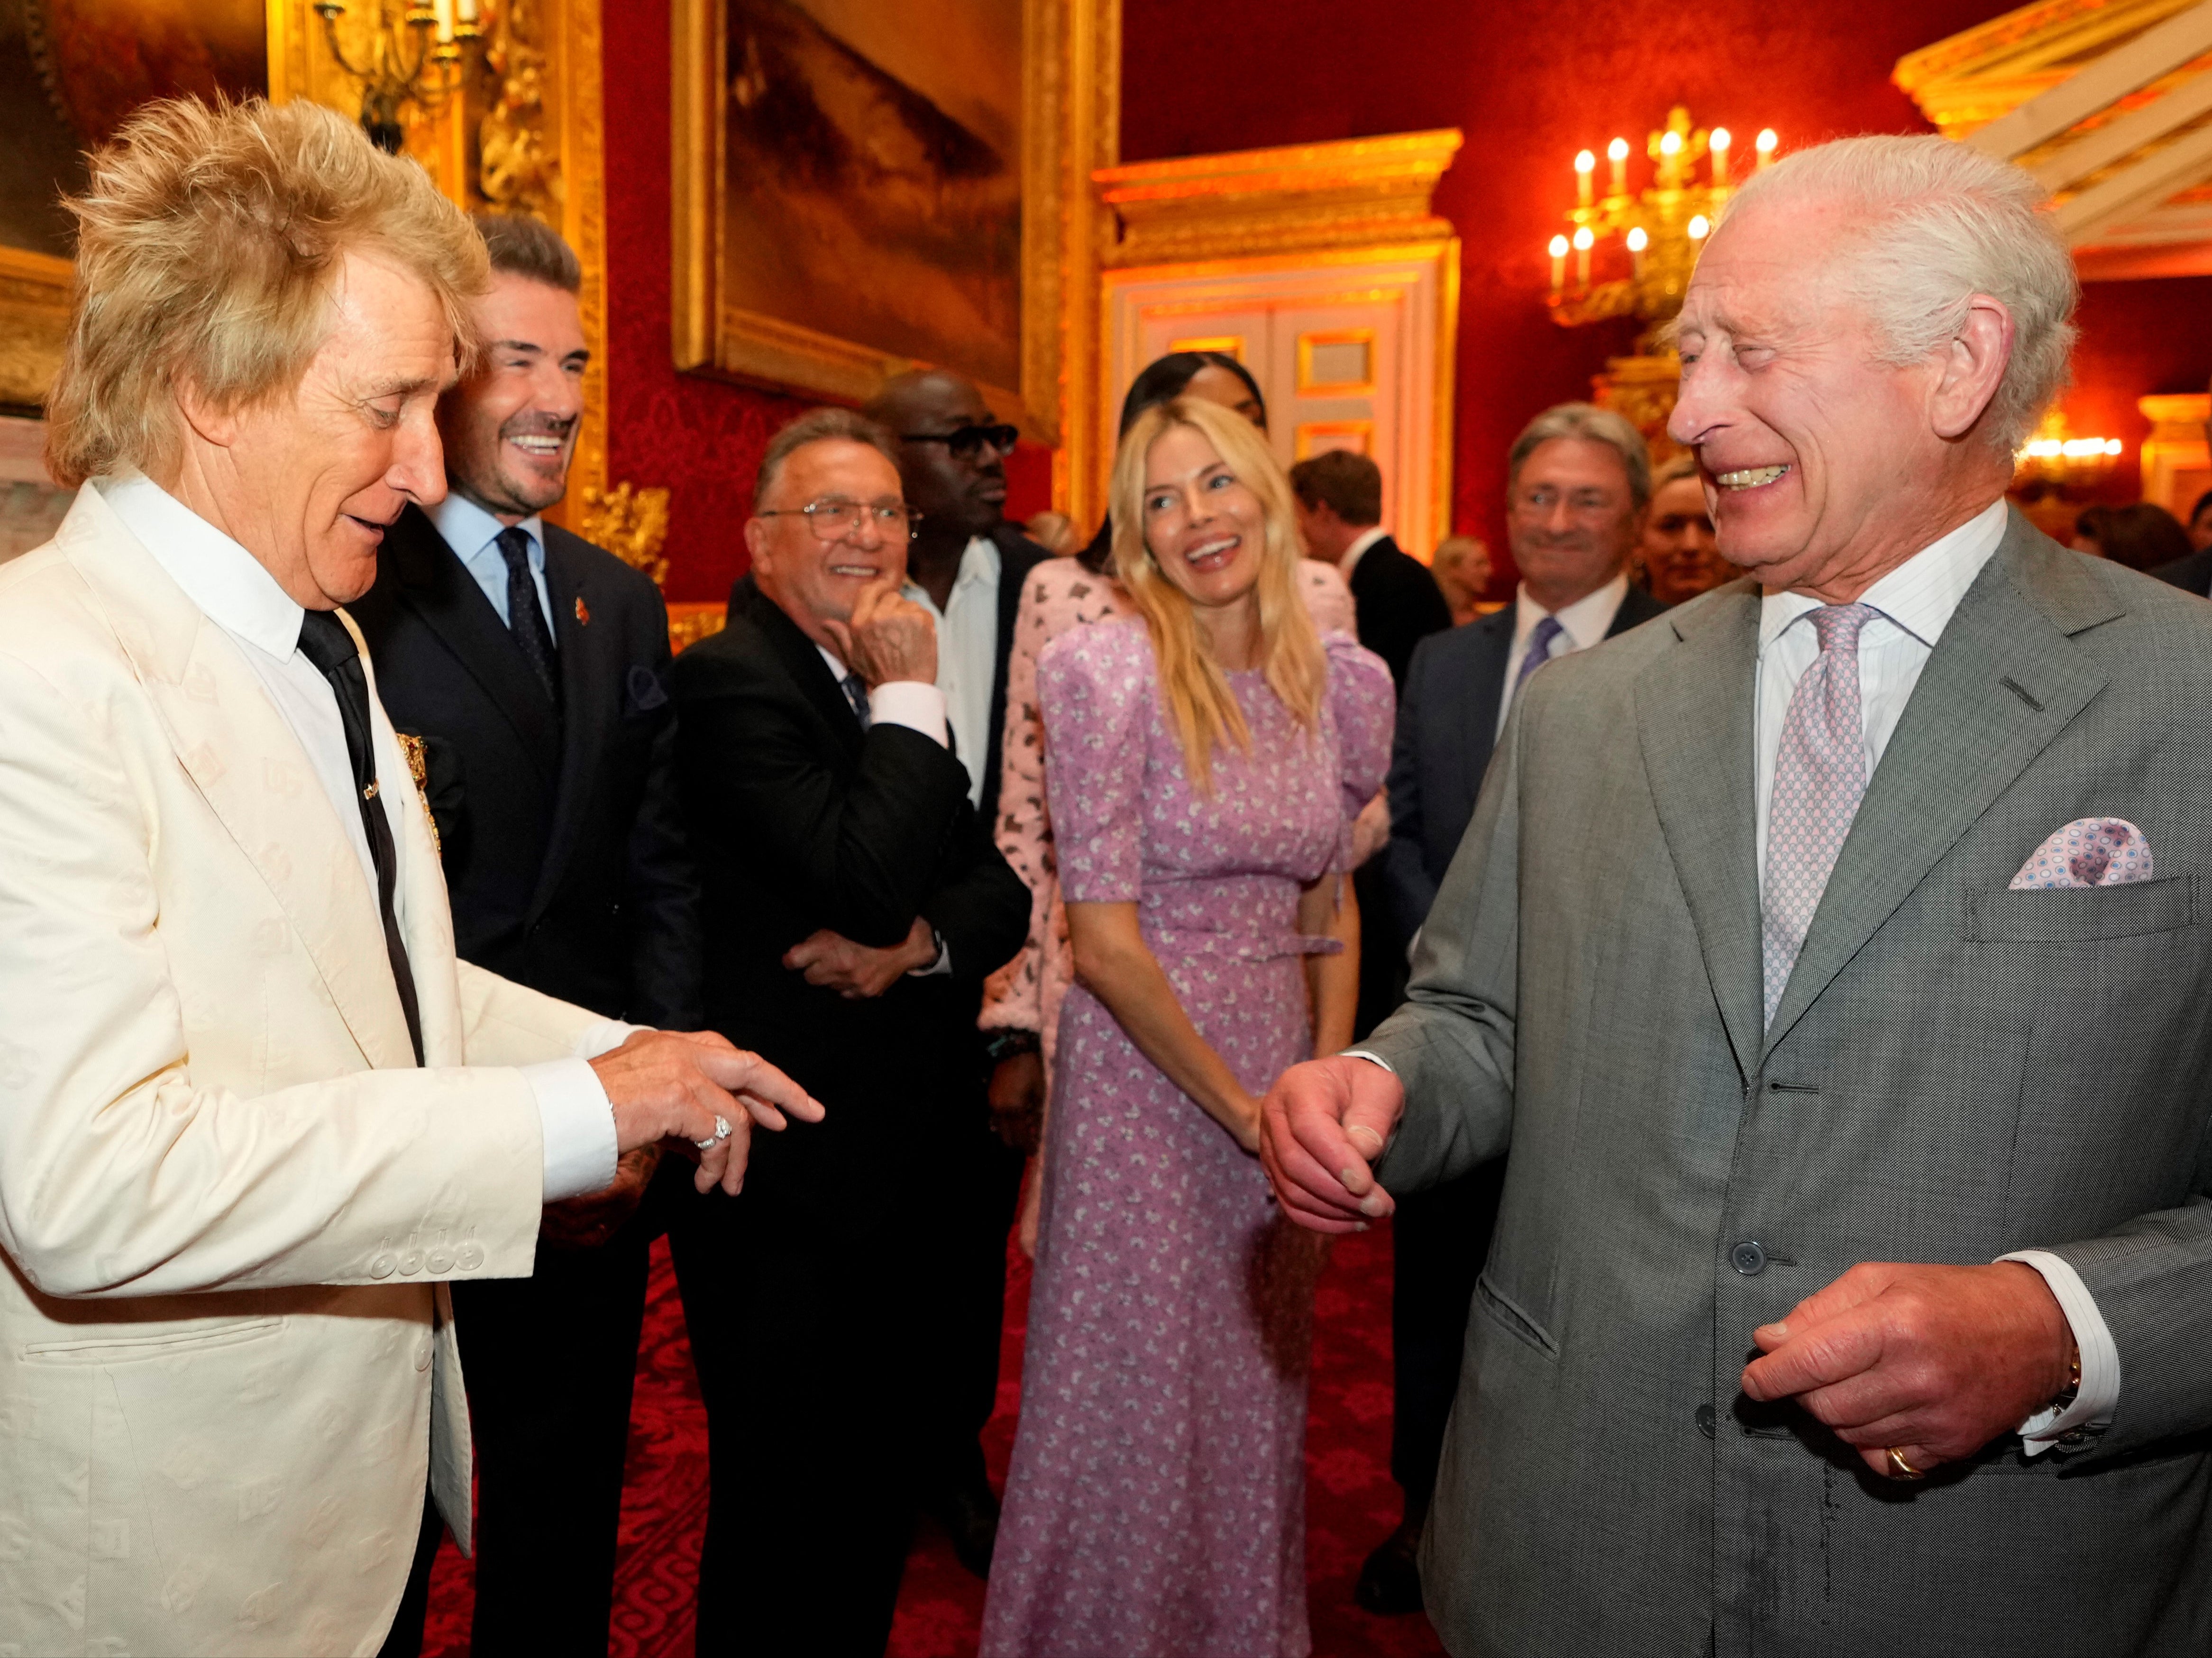 König Charles lächelt, während er mit dem britischen Sänger Rod Stewart, dem ehemaligen englischen Spieler David Beckham und der britischen Schauspielerin Sienna Miller spricht.